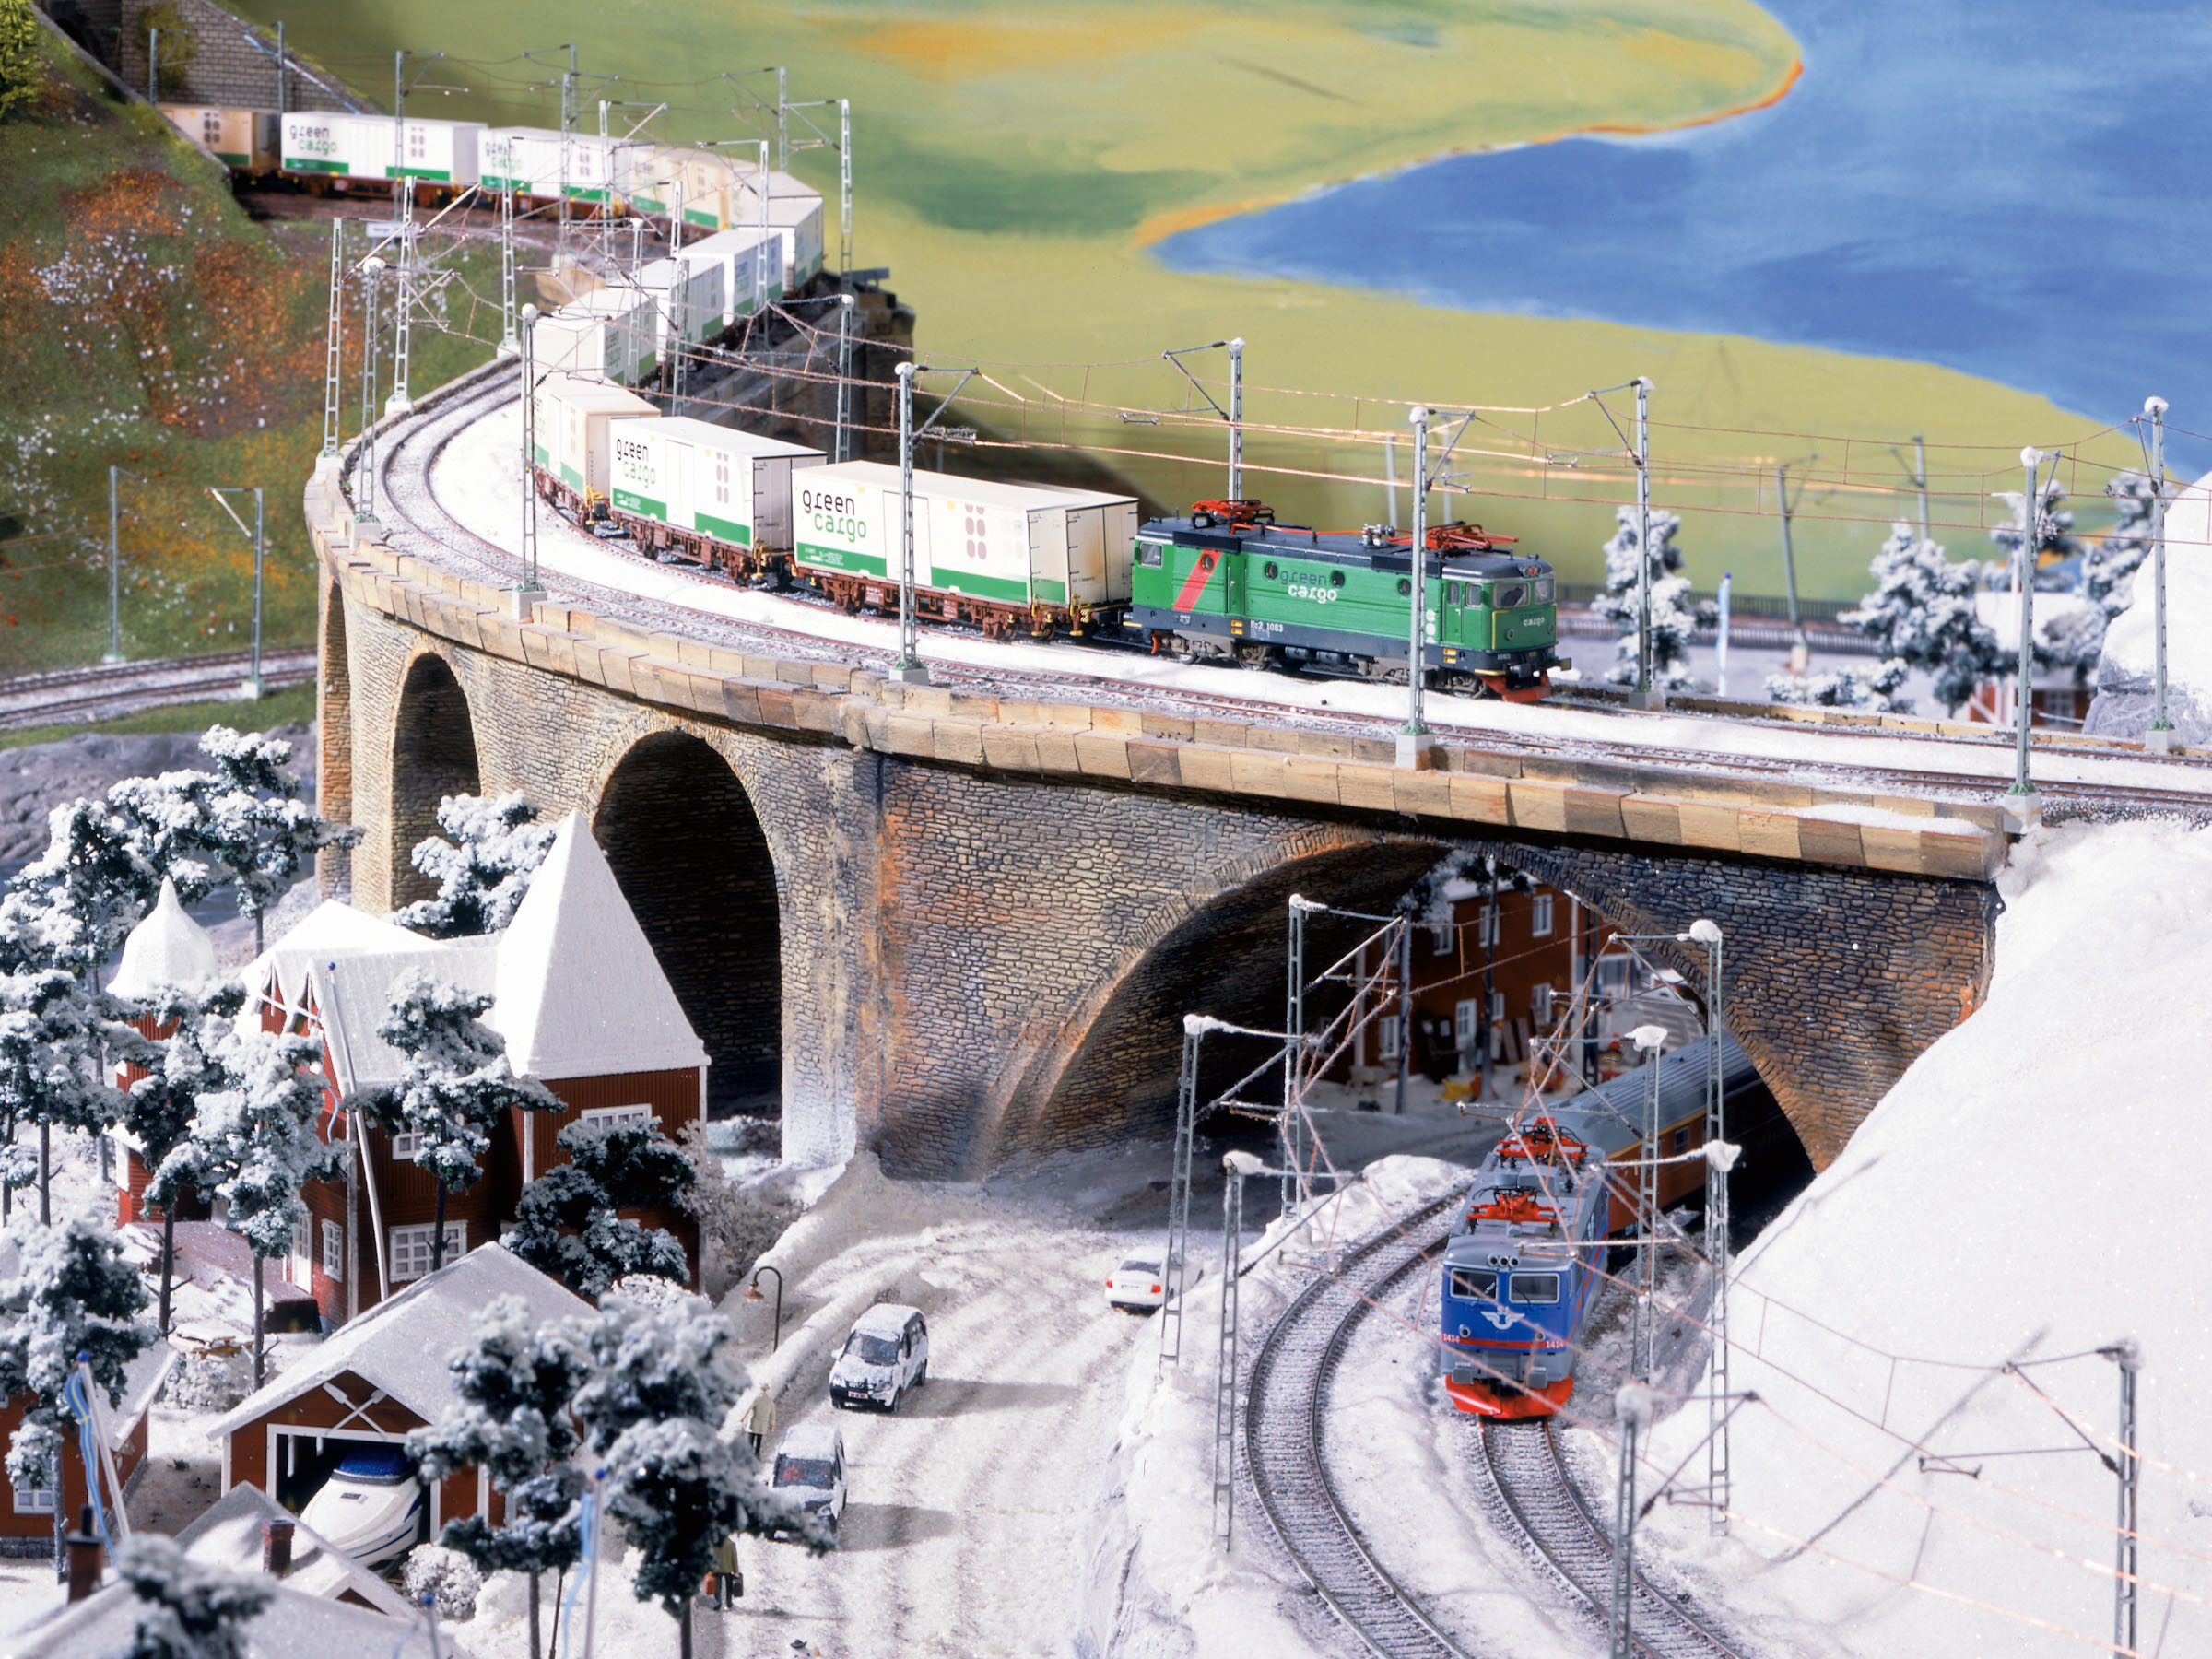 modelová železnice, modely, vlaky, 铁道模型, 火车玩具, 鐵道模型, 火車玩具 - Fascinating video of the world’s largest HO scale model railway layout - Miniatur Wunderland Germany